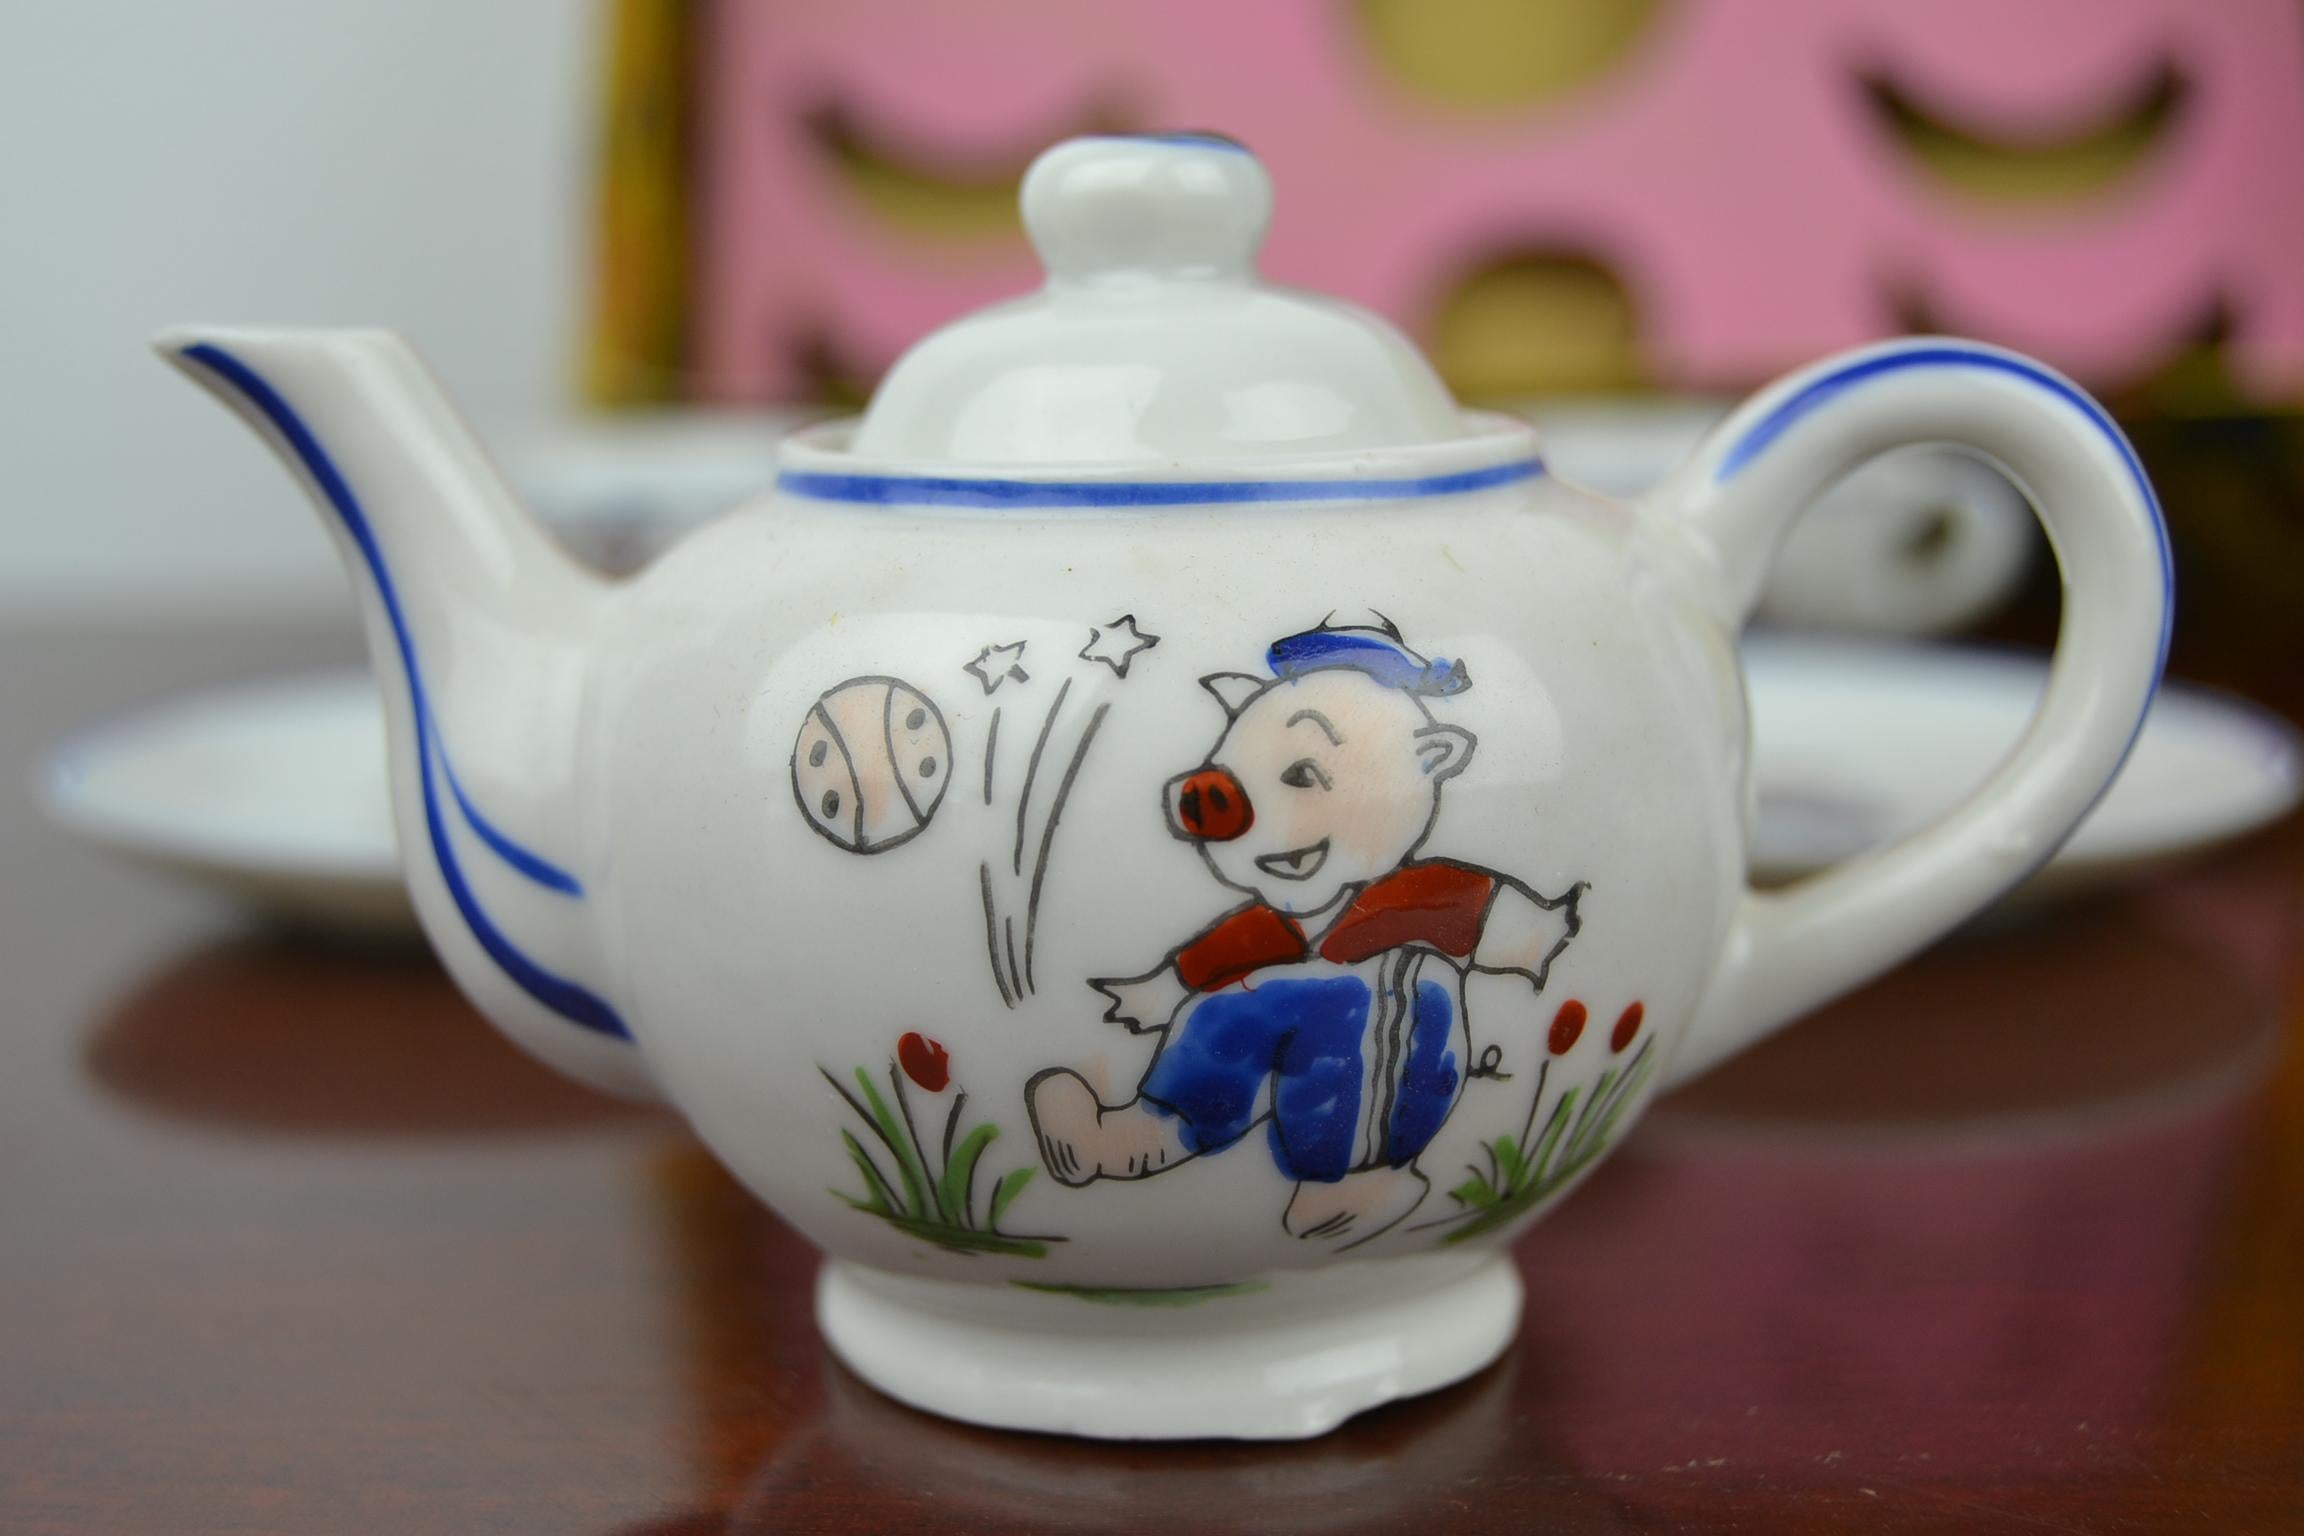 Porcelain Tea Set for Children, Pig Toy Tea Set, Foreign, Made in Japan 2